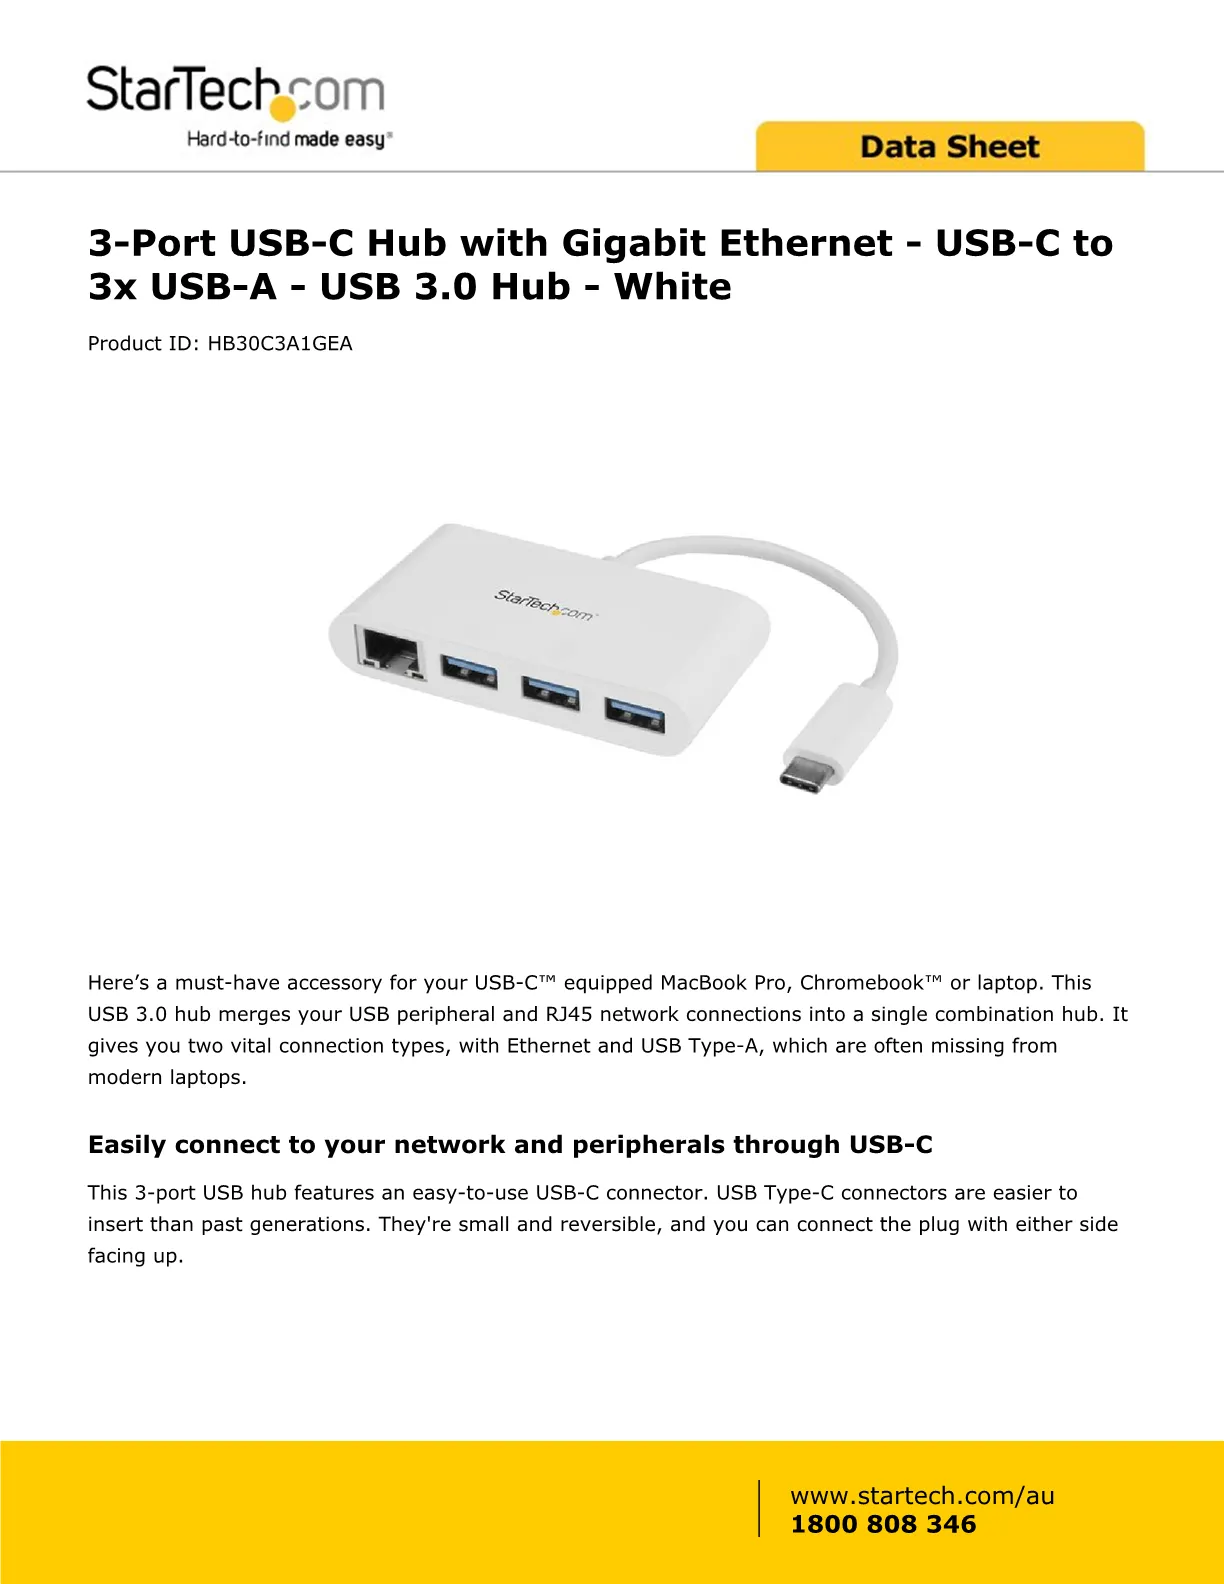 STARTECH 3 PORT USB-C HUB W/ GBE - USB-C TO 3X - HB30C3A1GEA